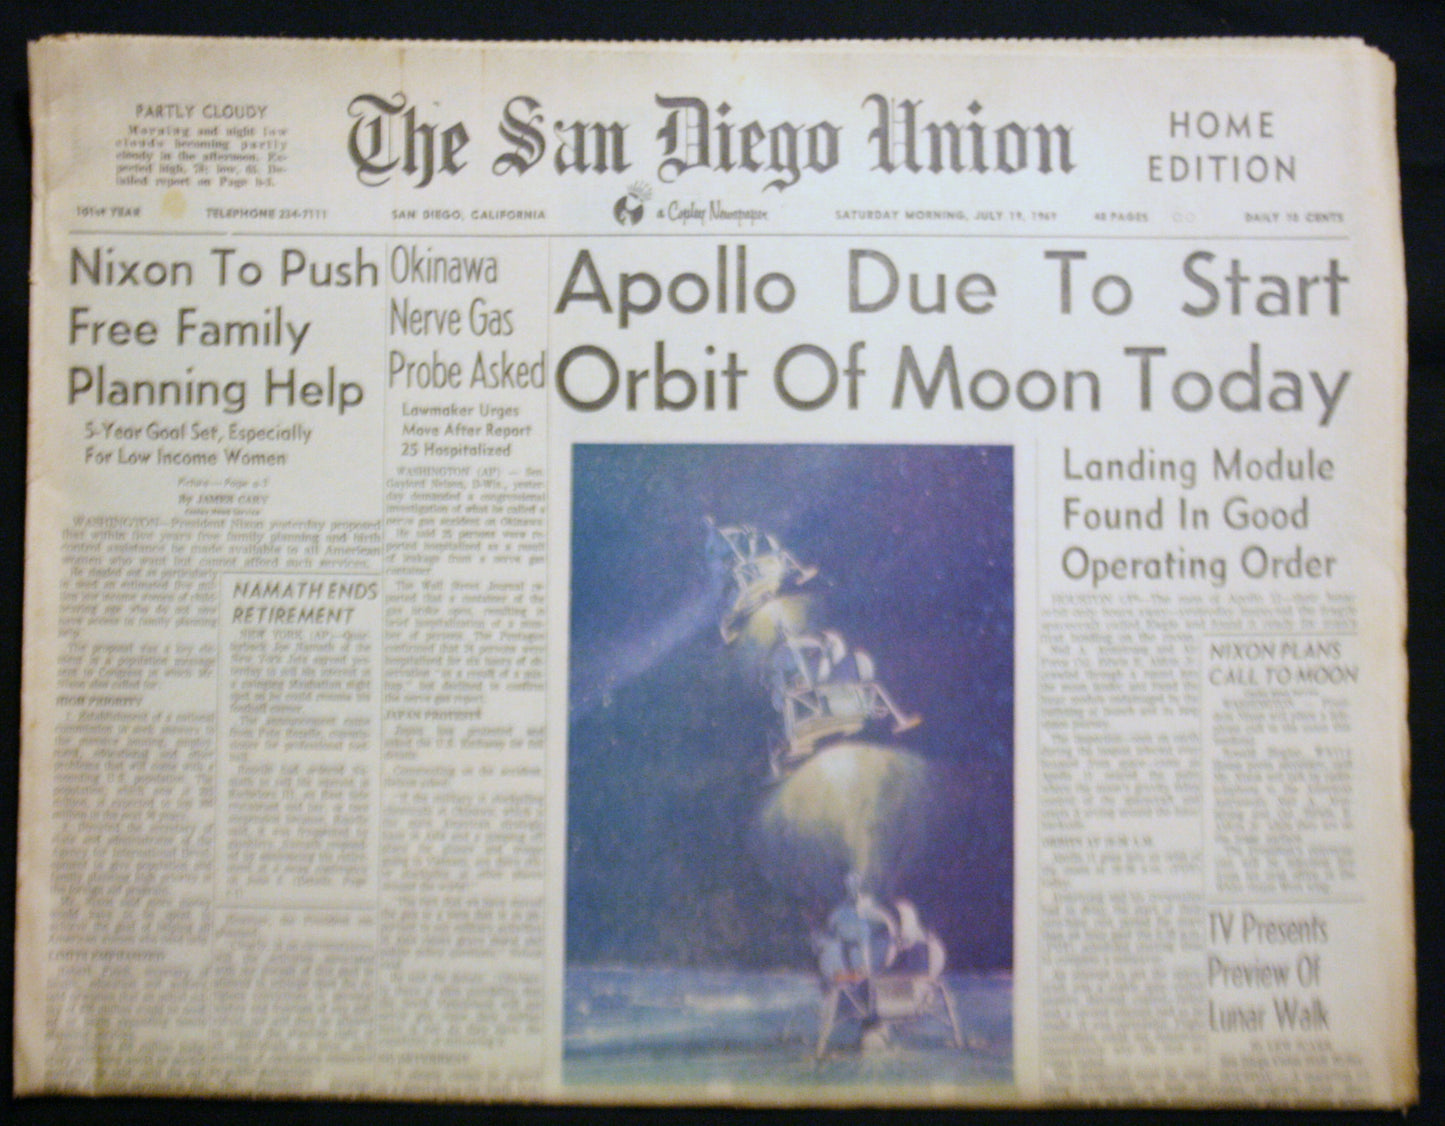 07 19 1969 NEWS San Diego Union -Apollo - Nixon